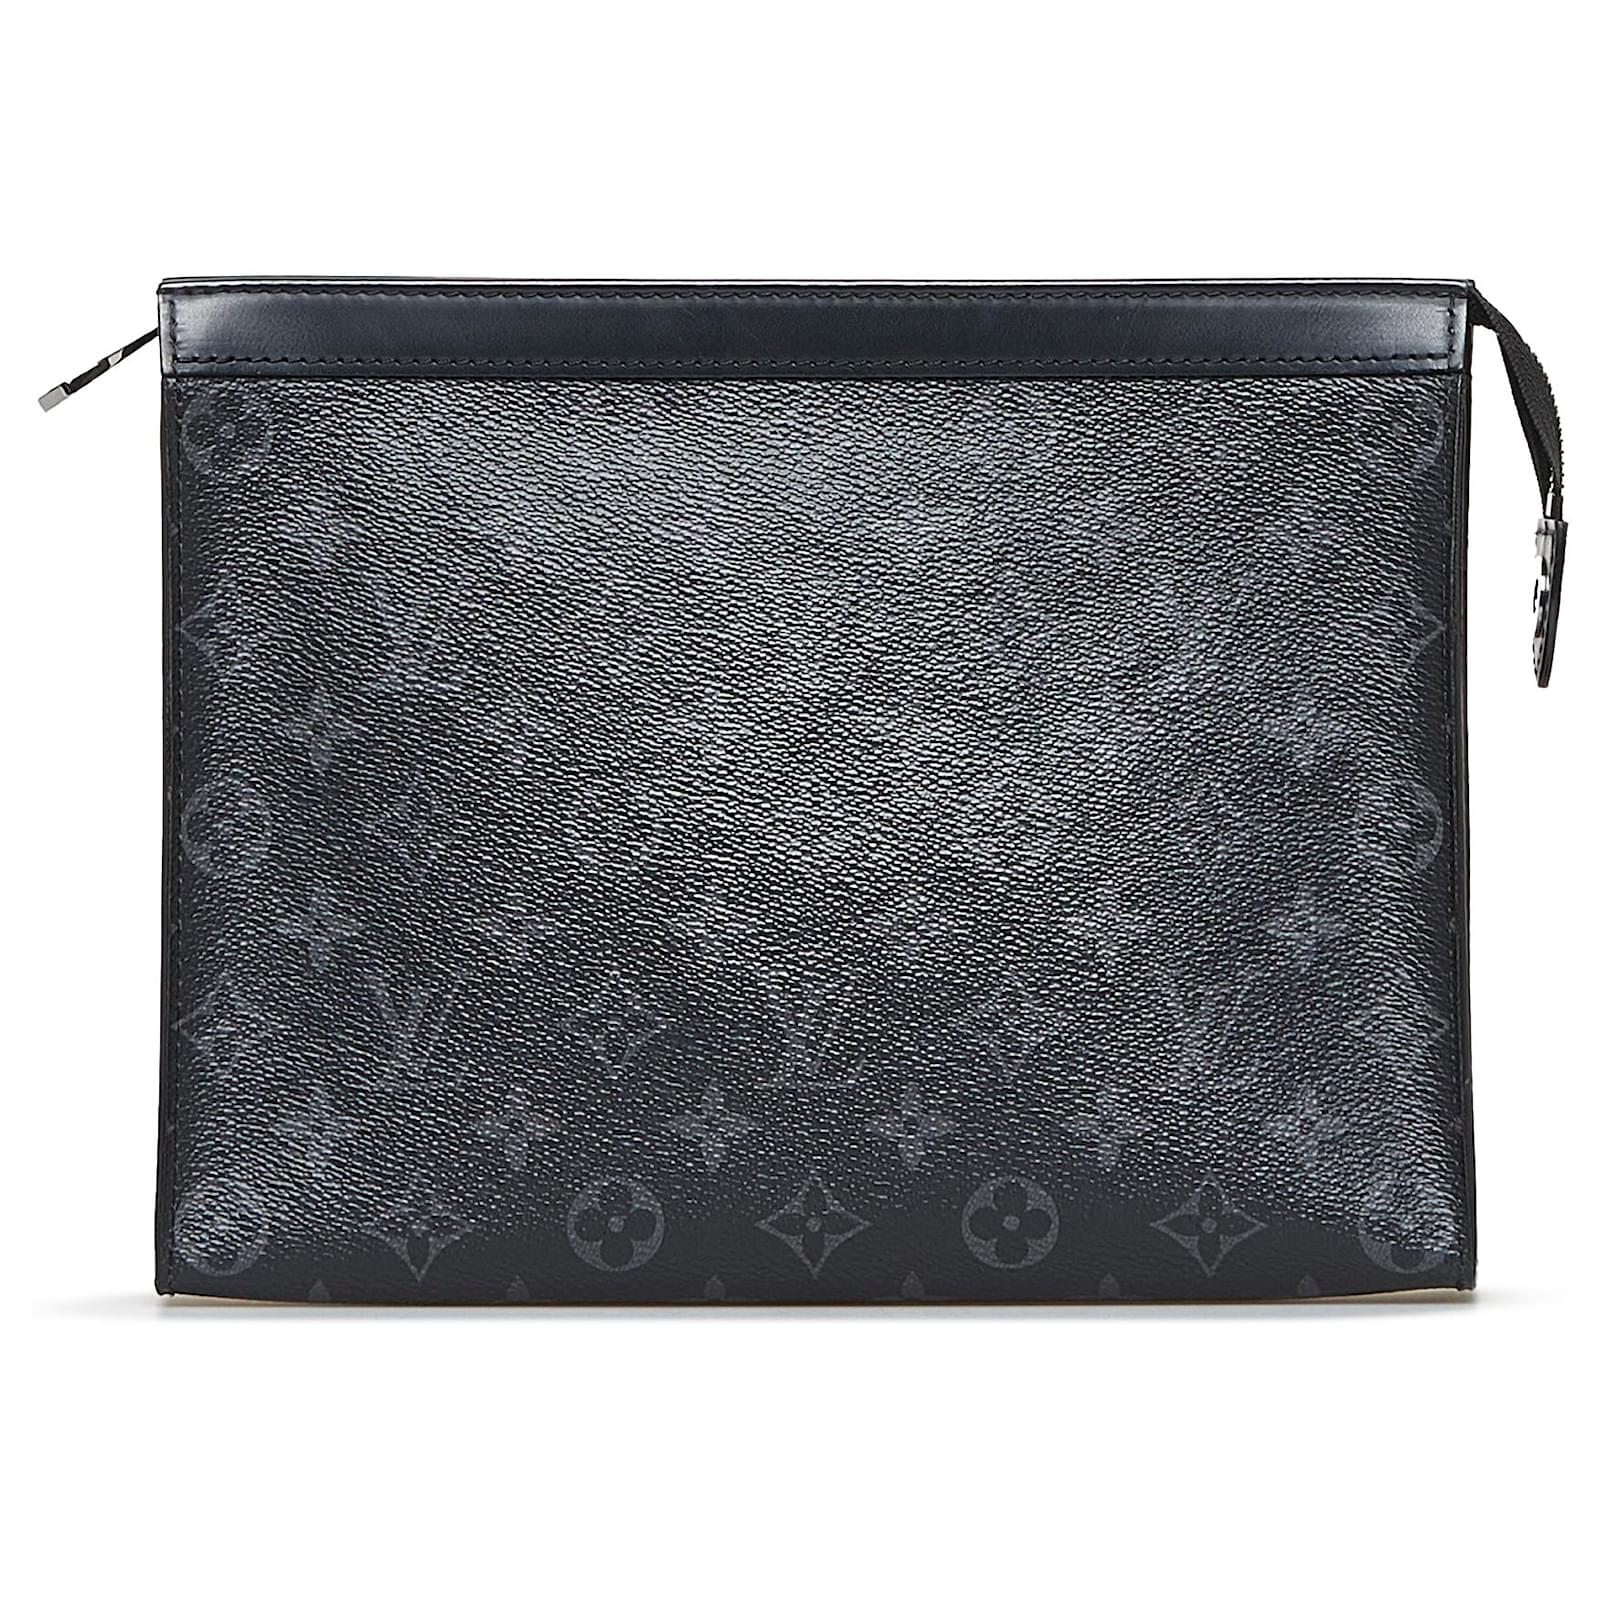 Louis Vuitton Pochette Voyage MM Clutch Bag Monogram Canvas In